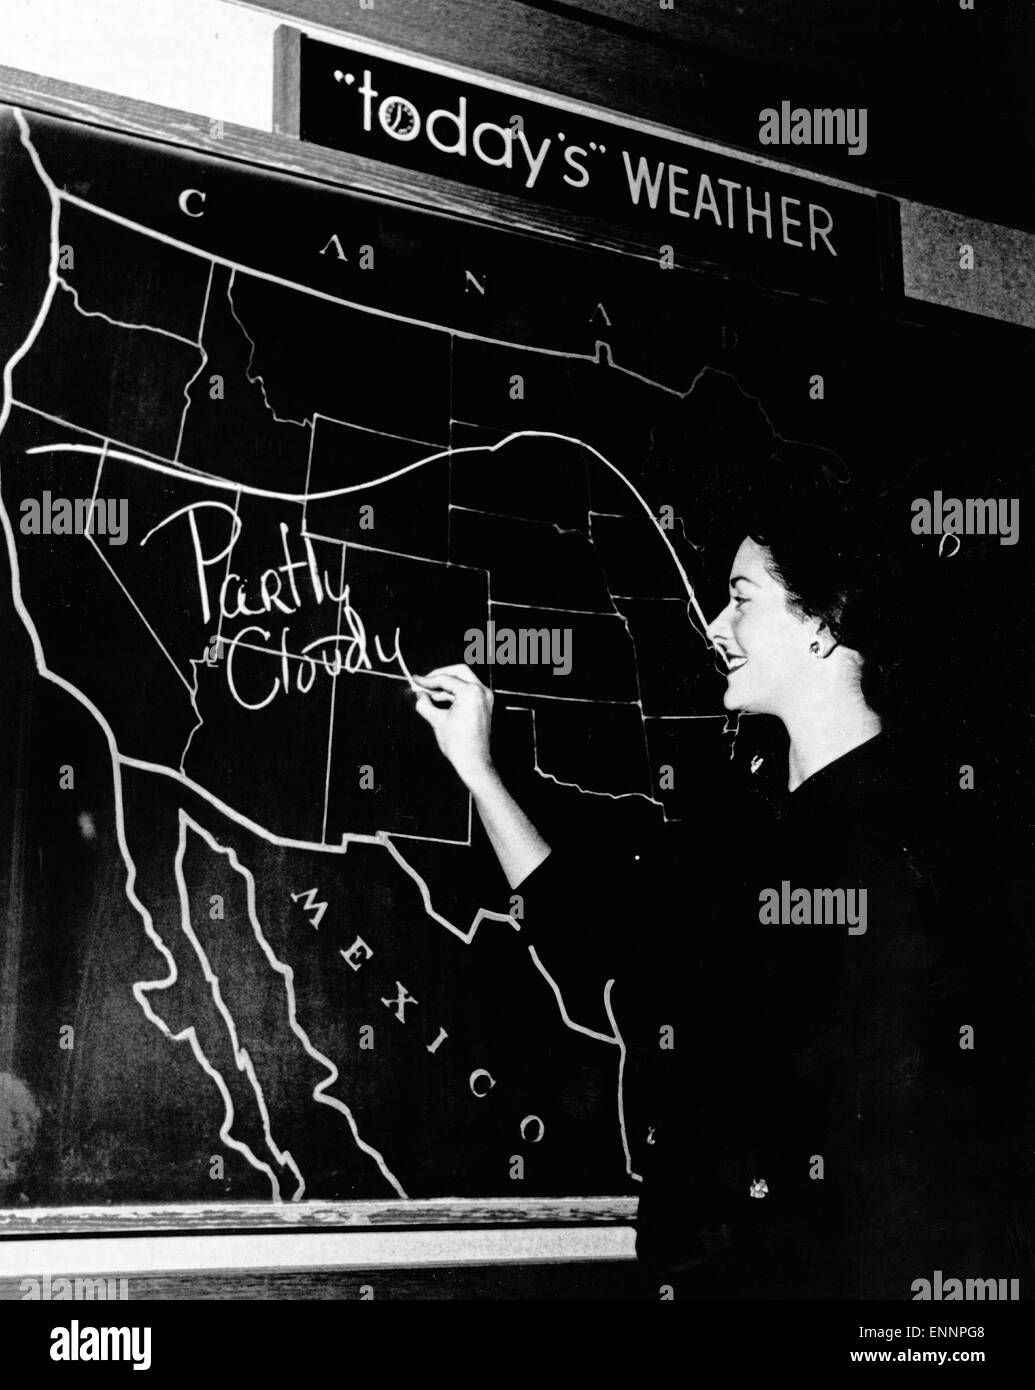 Eine Meteorologin des amerikanischen Fernsehens bei der Wettervorhersage in der Sendung 'Today's Weather', USA 1960er Jahre. A m Stock Photo